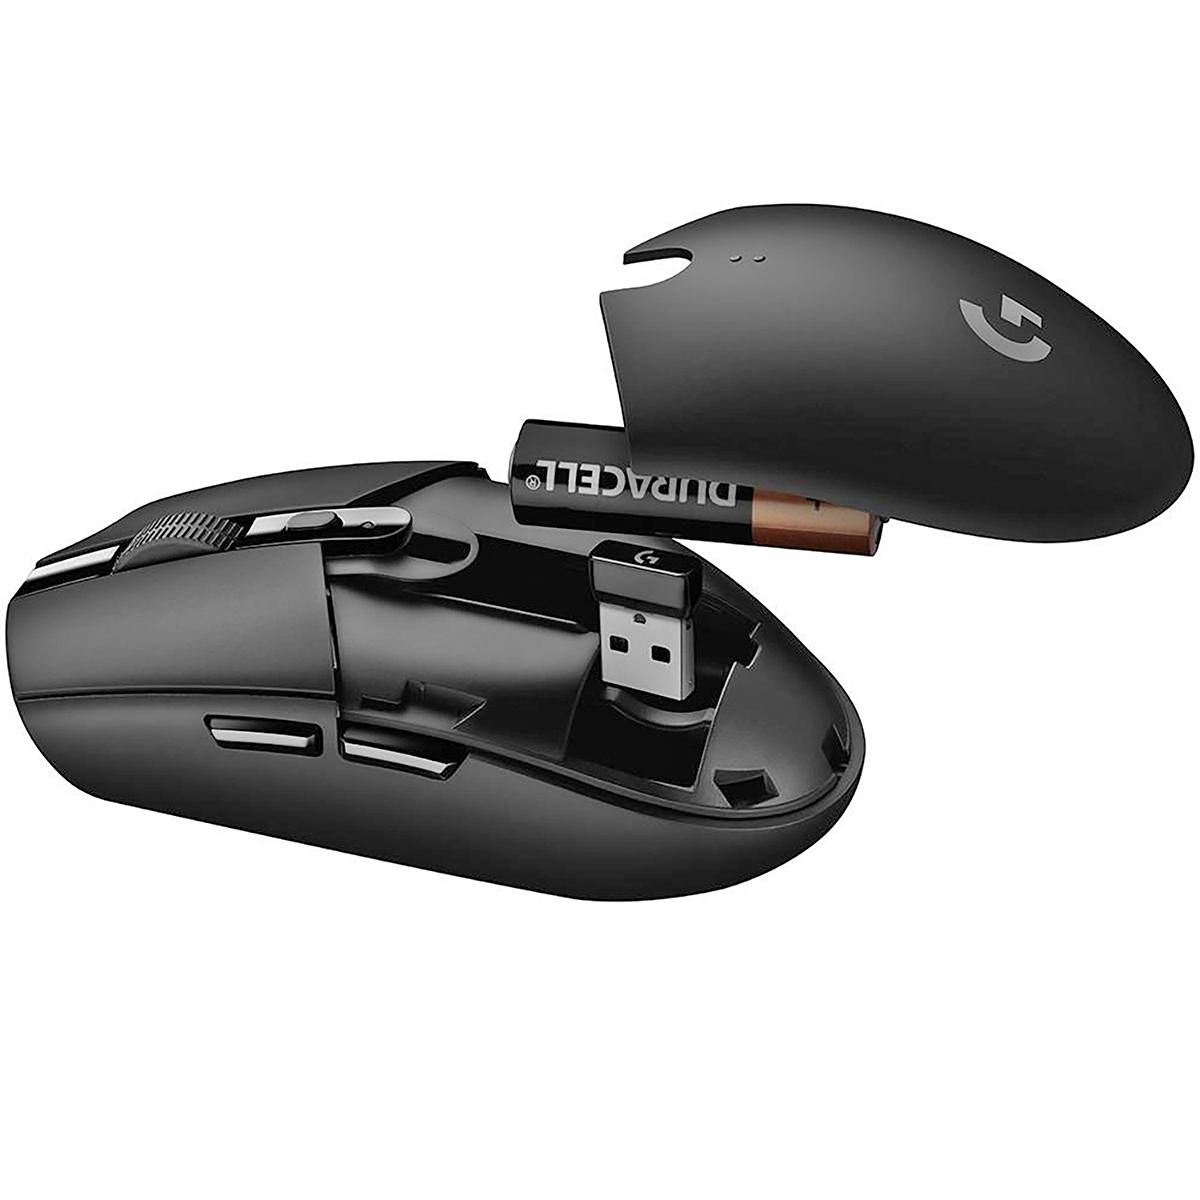 Mouse Gamer Sem Fio Logitech G305 LIGHTSPEED Sensor HERO 1m/s 6 Botões Programáveis Até 12.000 DPI Preto 910-005281